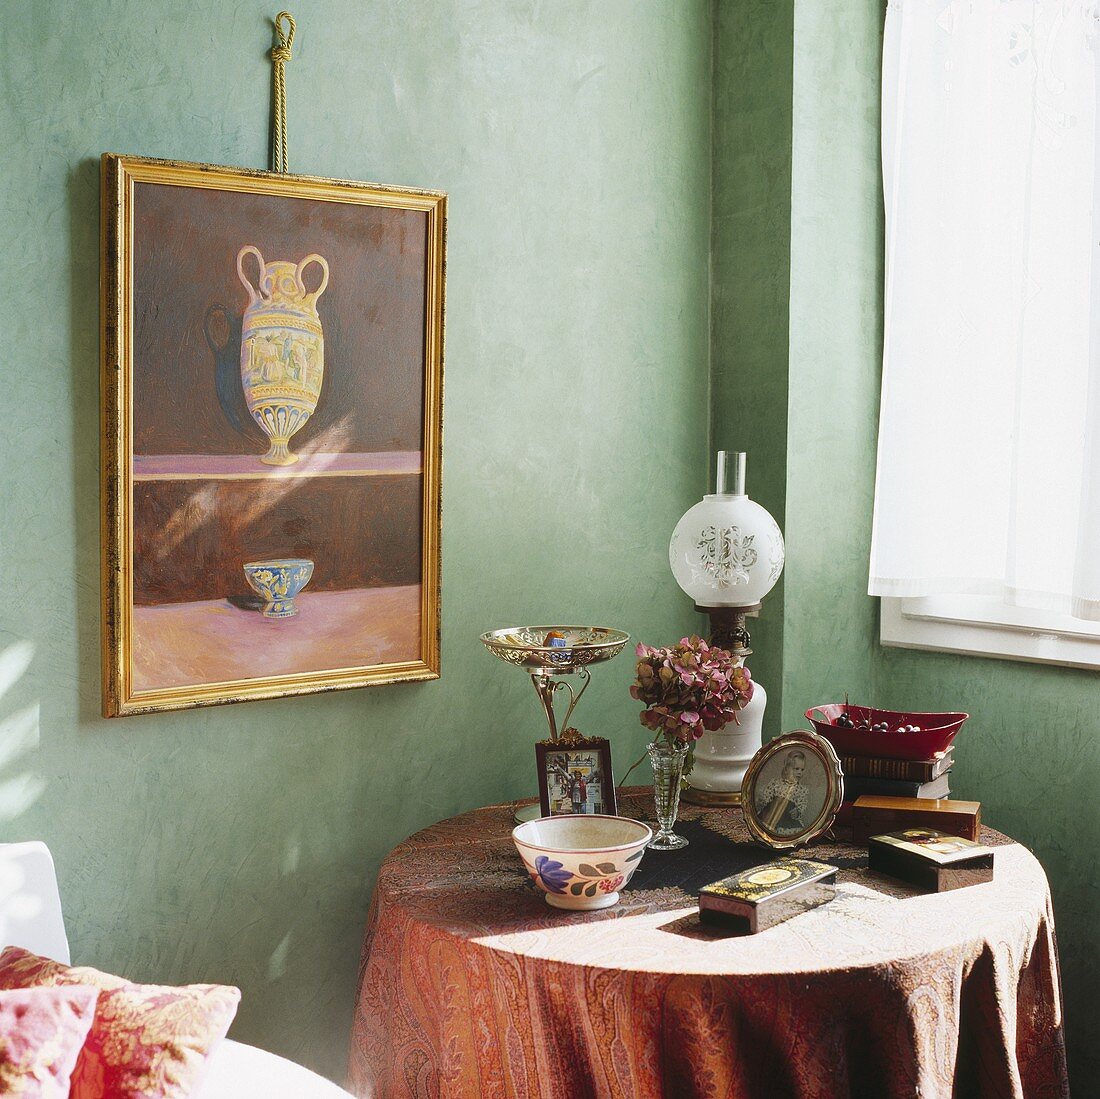 Ein Bild hängt über einem kleinen Tisch mit viktorianischer Öllampe, Fotos und Schälchen